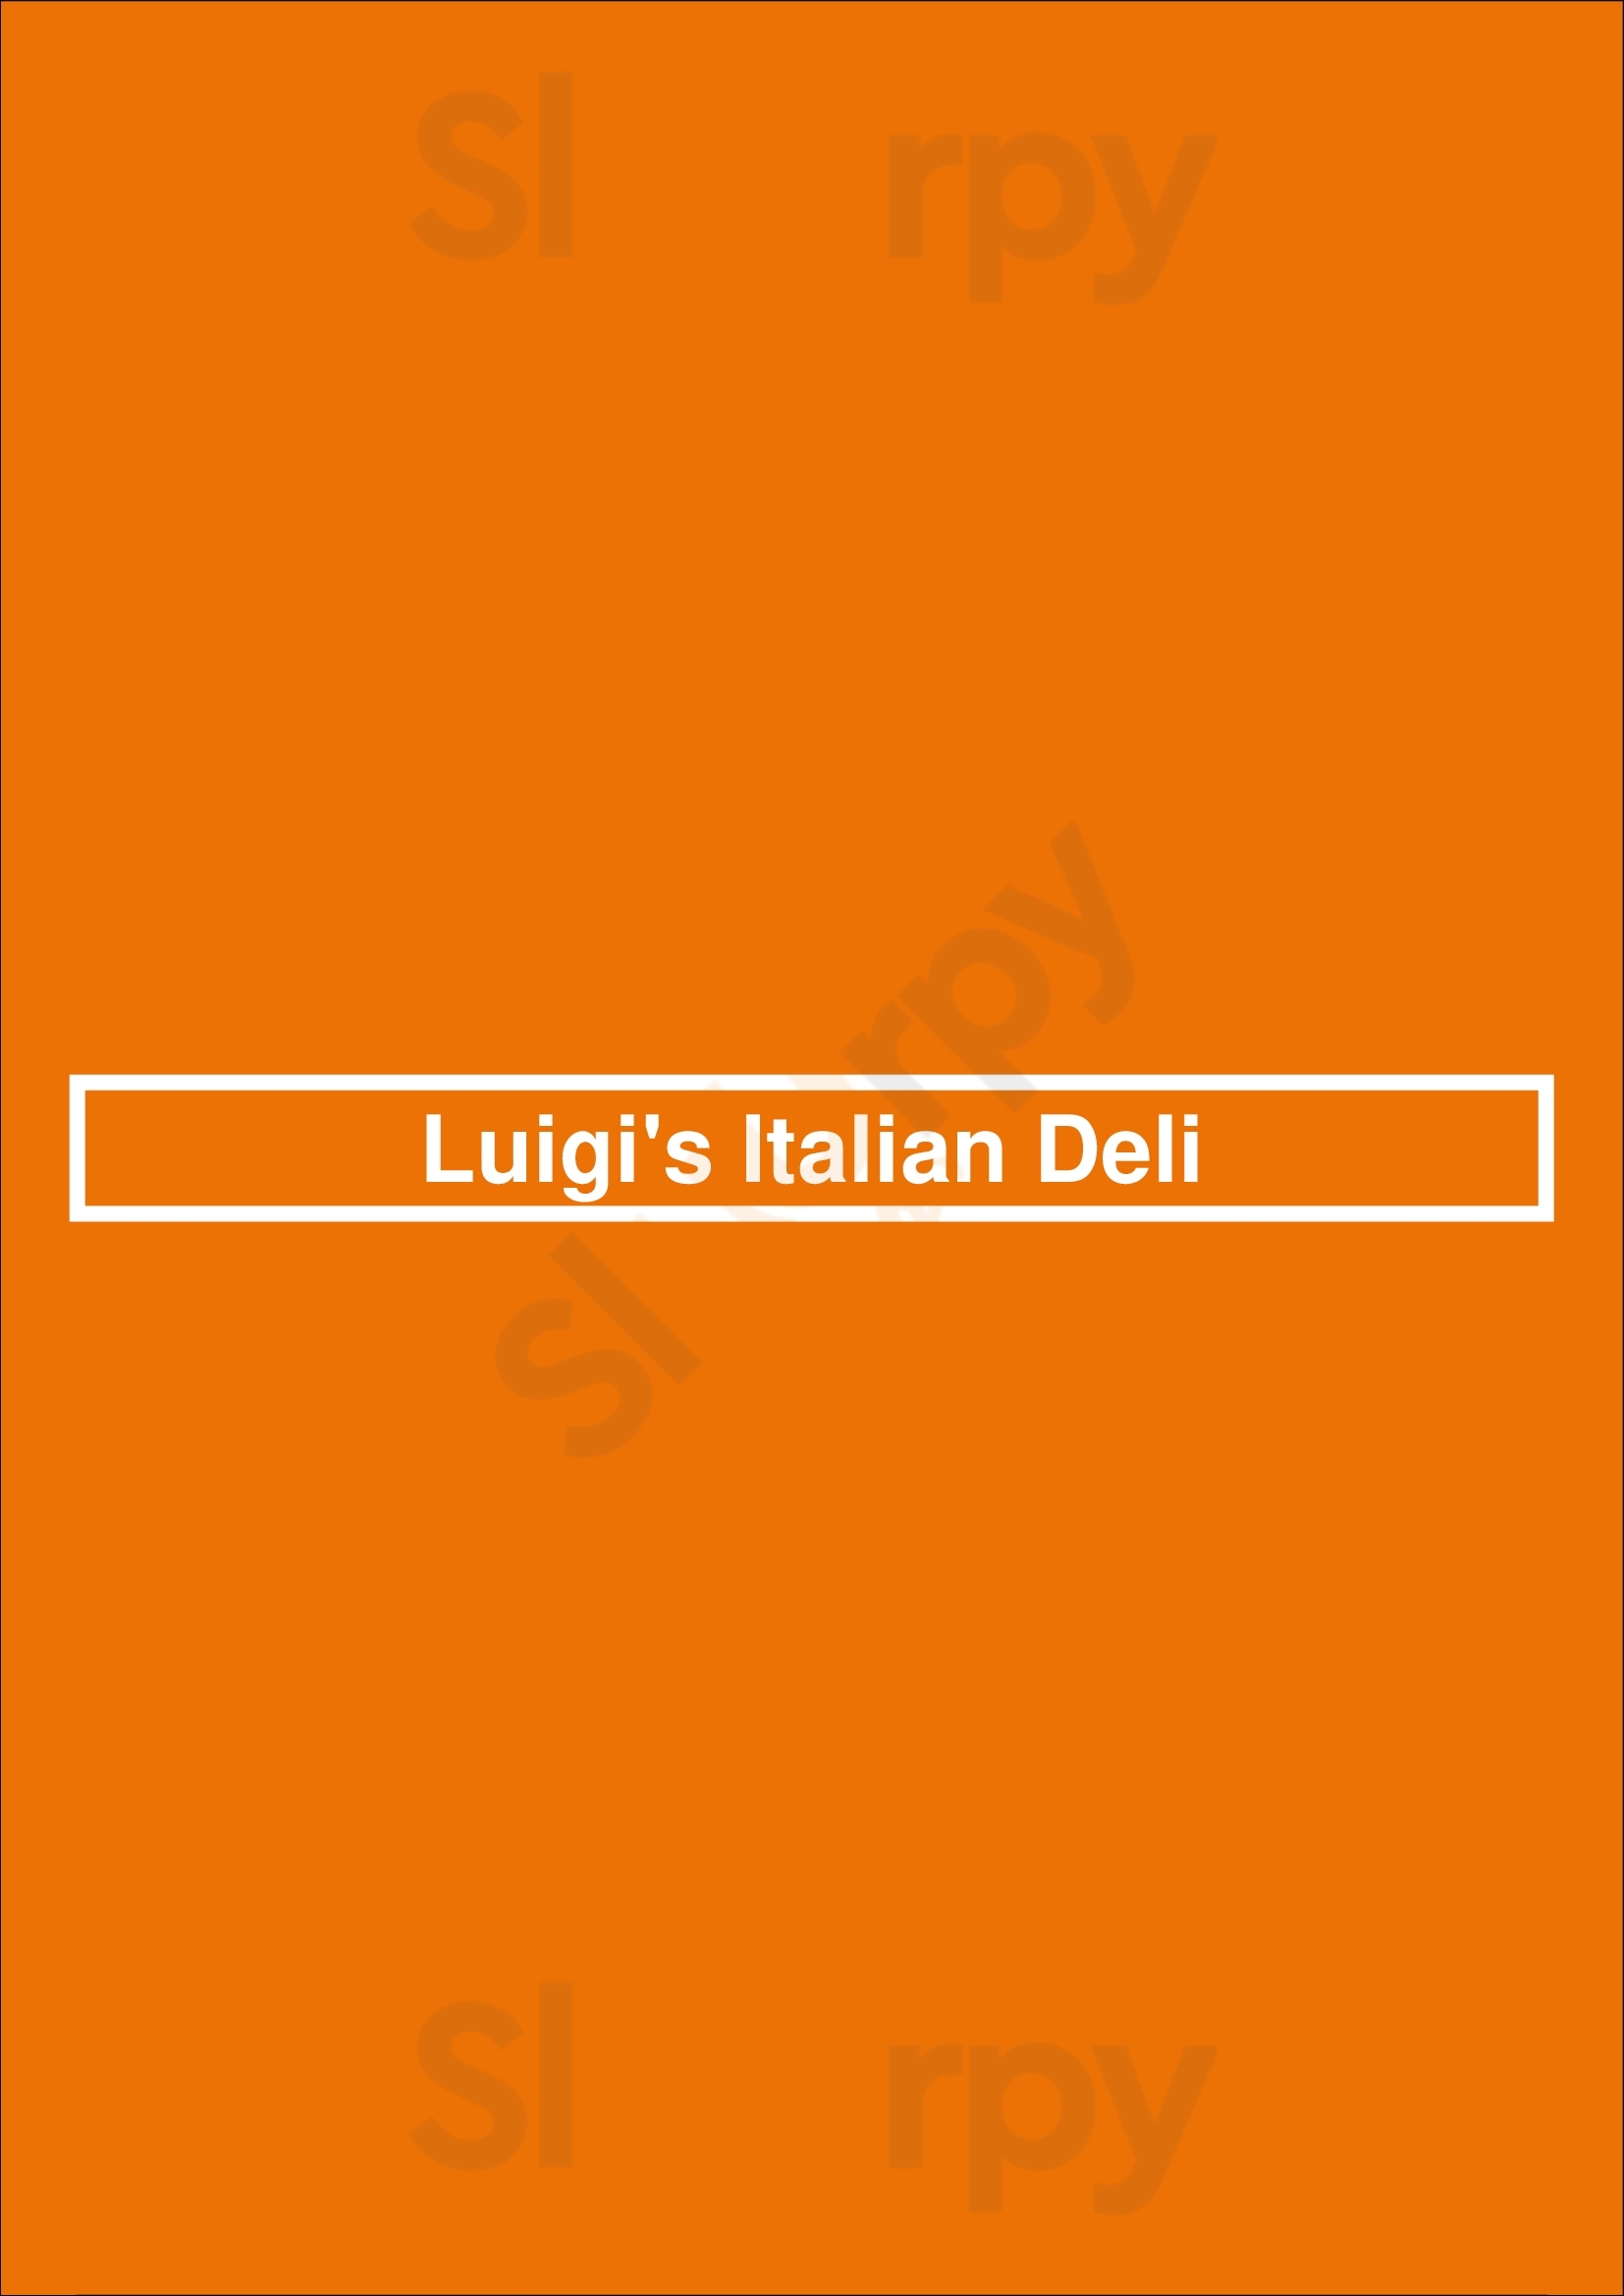 Luigi's Italian Deli Baltimore Menu - 1